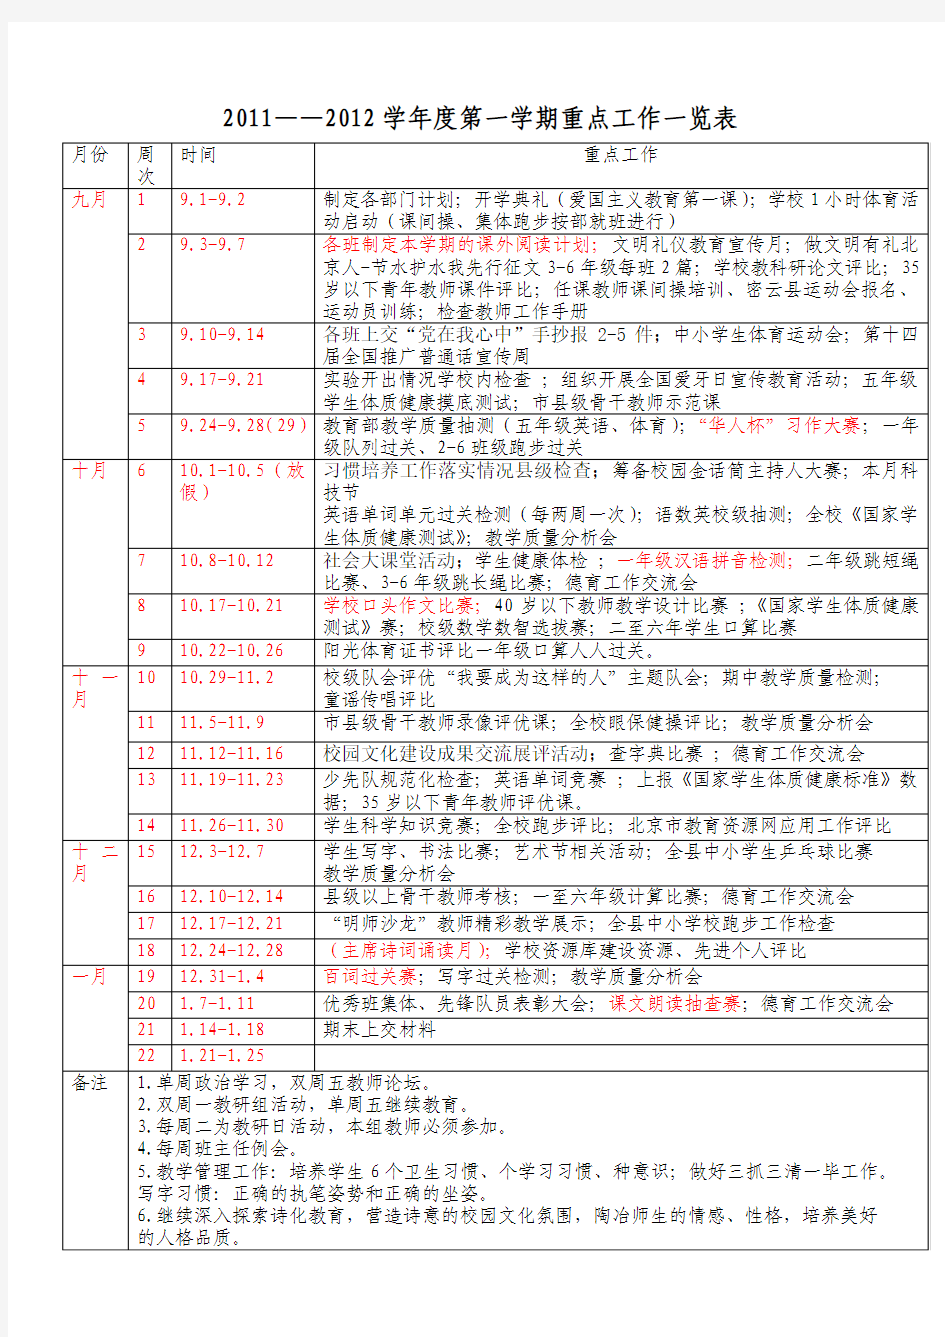 2012-2013年第一学期重点工作安排表